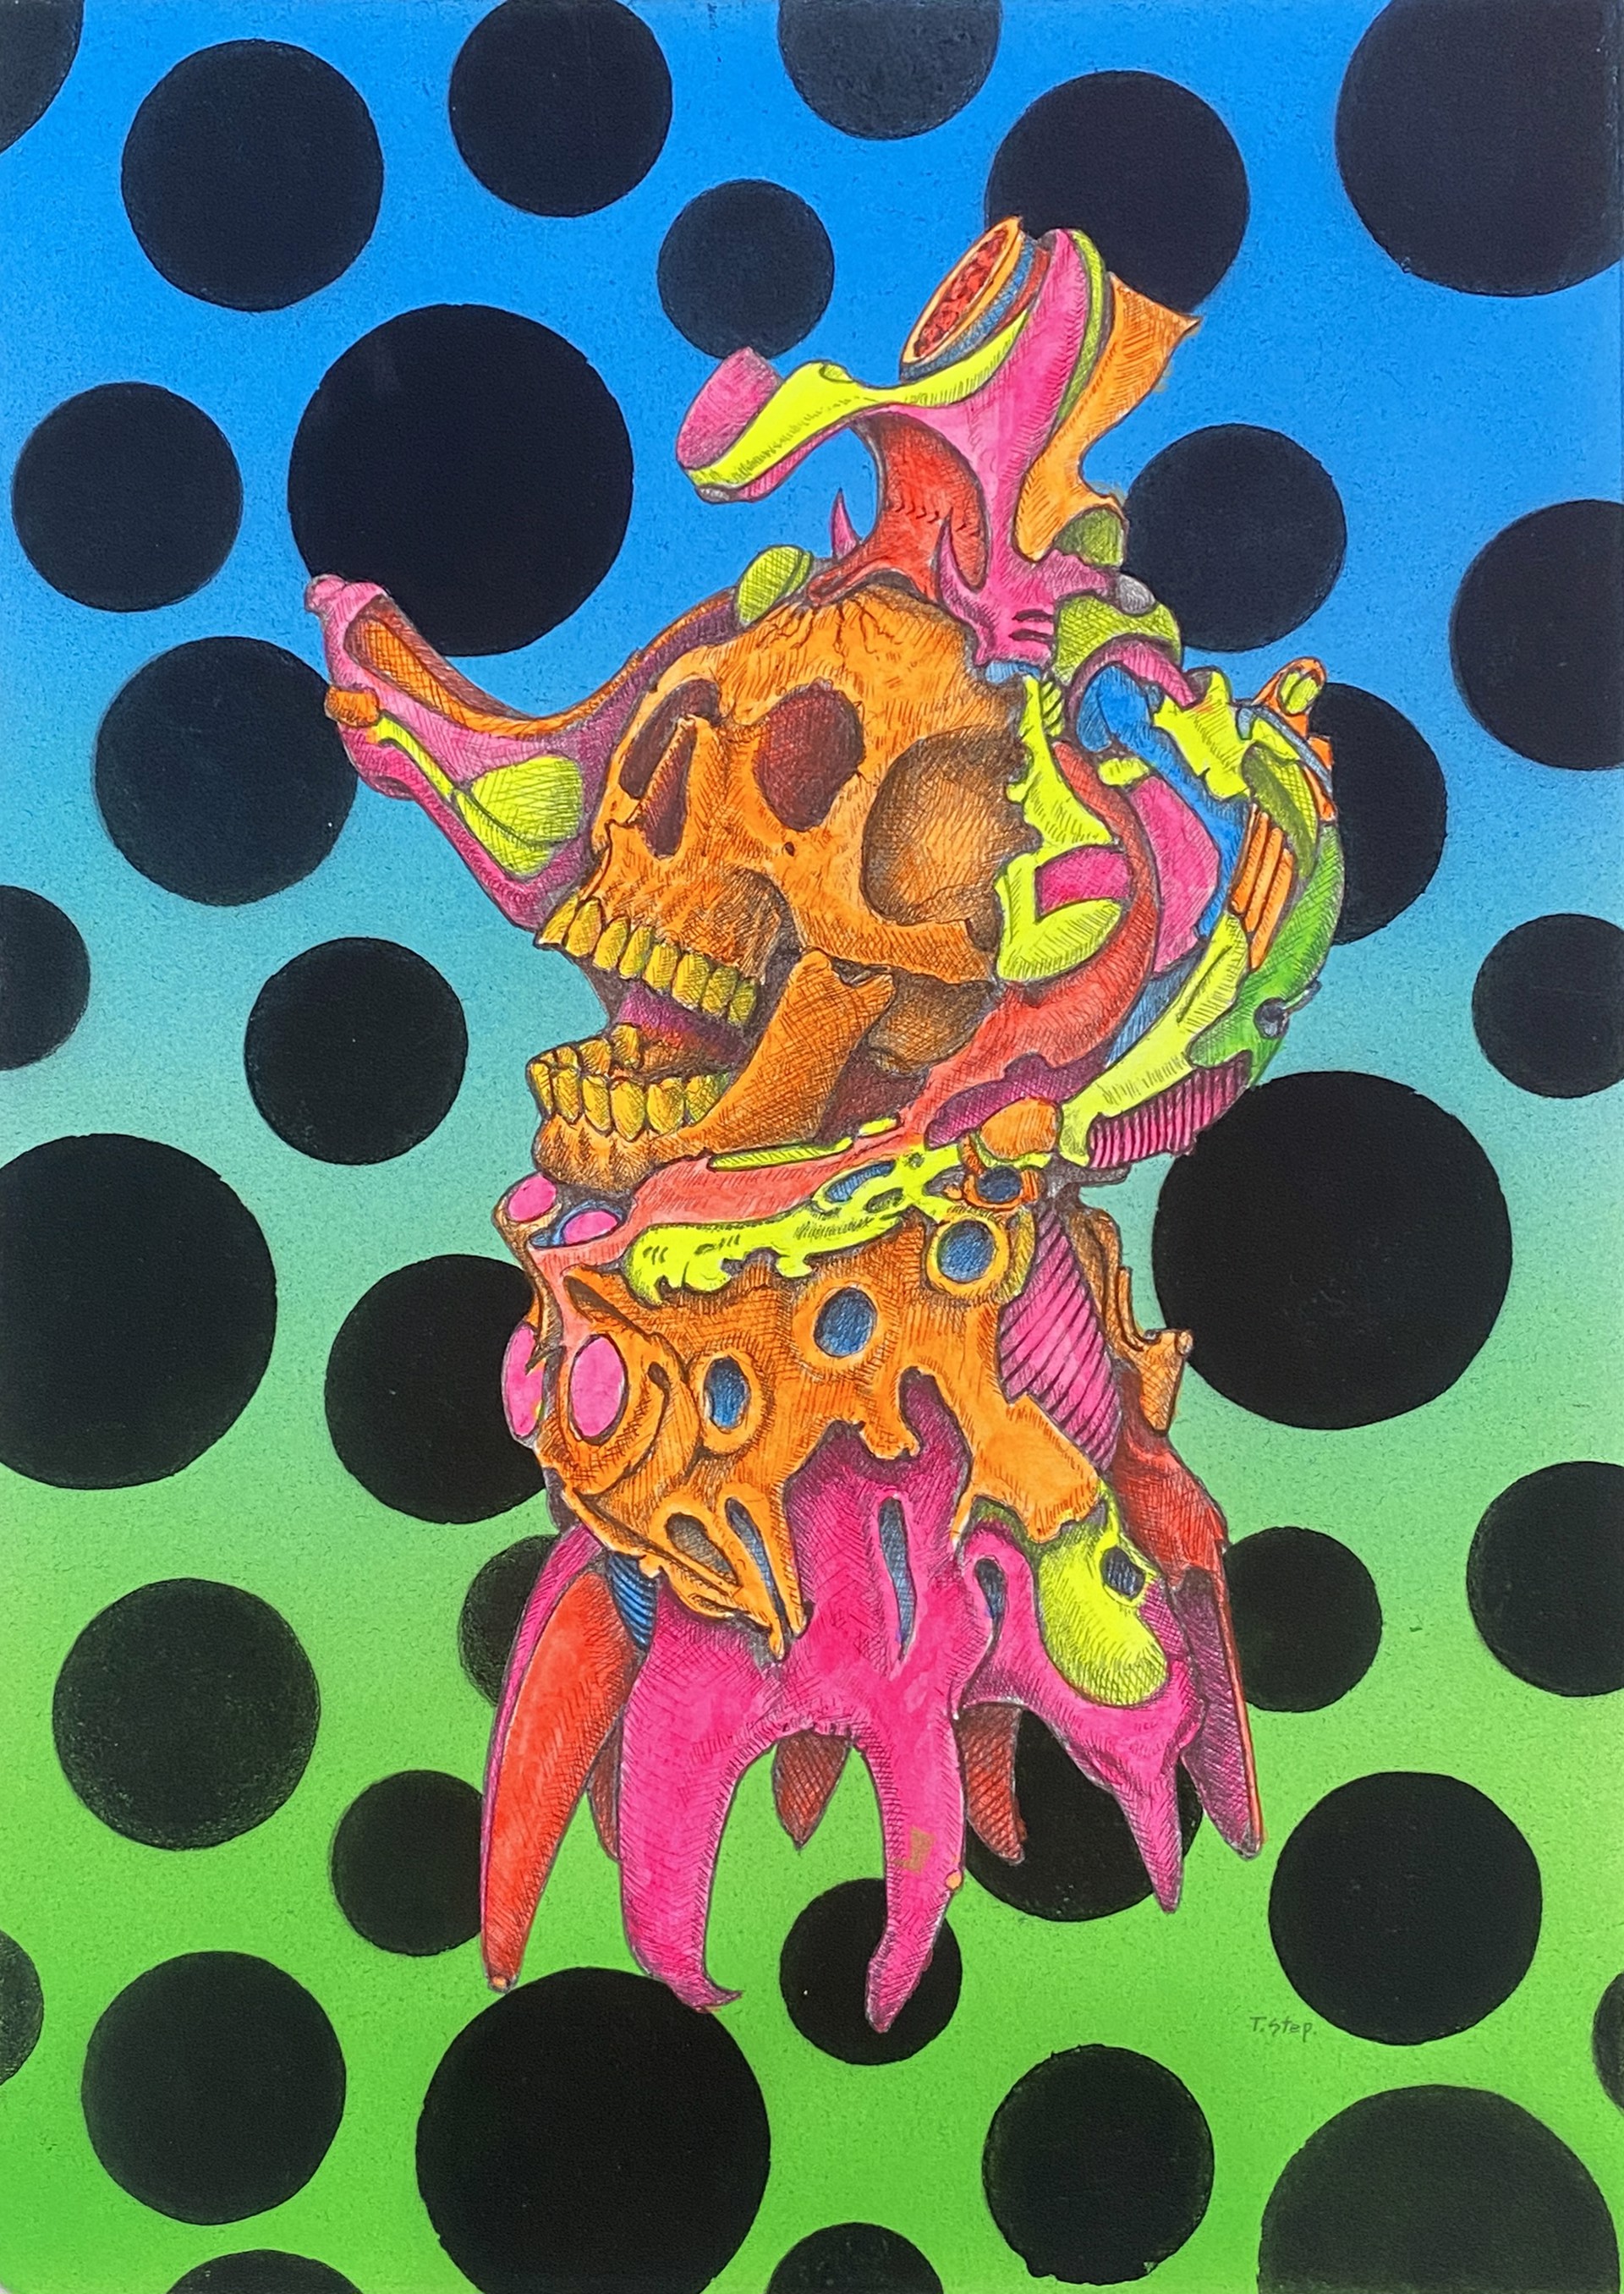 Skull Study #6 by Tom Stephenson